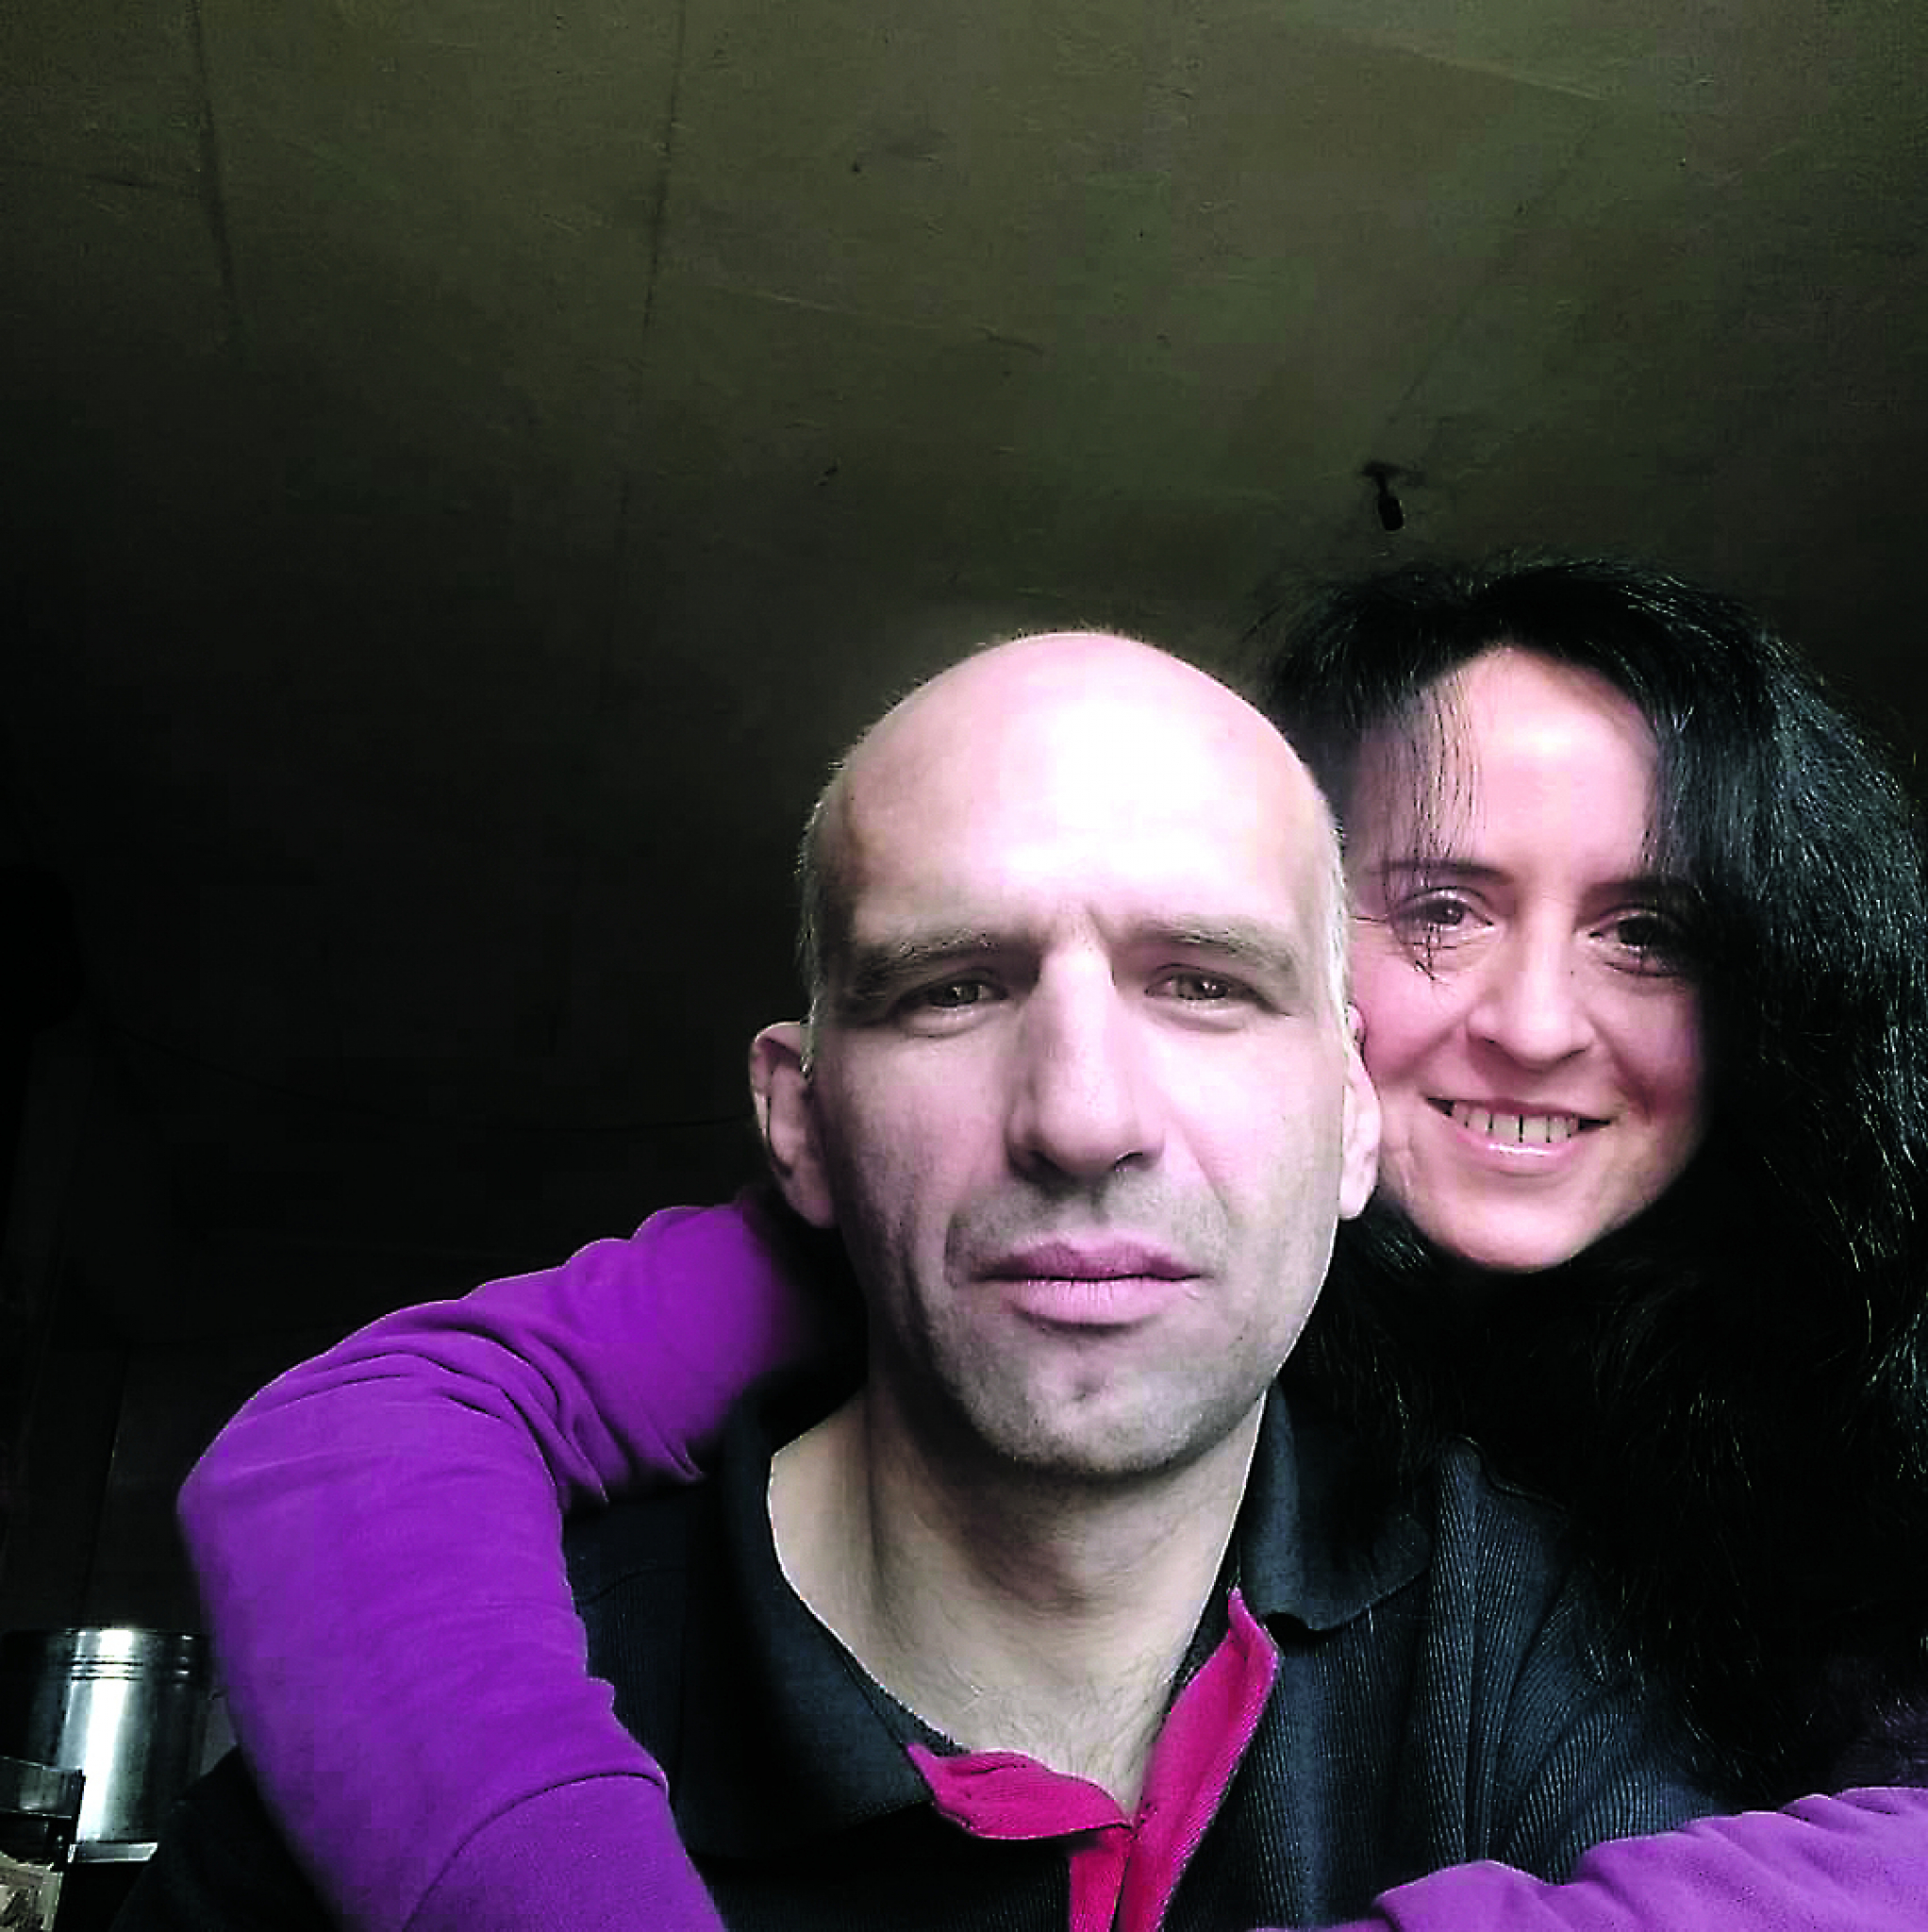 MOGLA JE SVE DA NAS UBIJE I SKUVA Ispovest sina Tereze Perić (46) koja je motornom testerom iskasapila supruga Srđana (42)